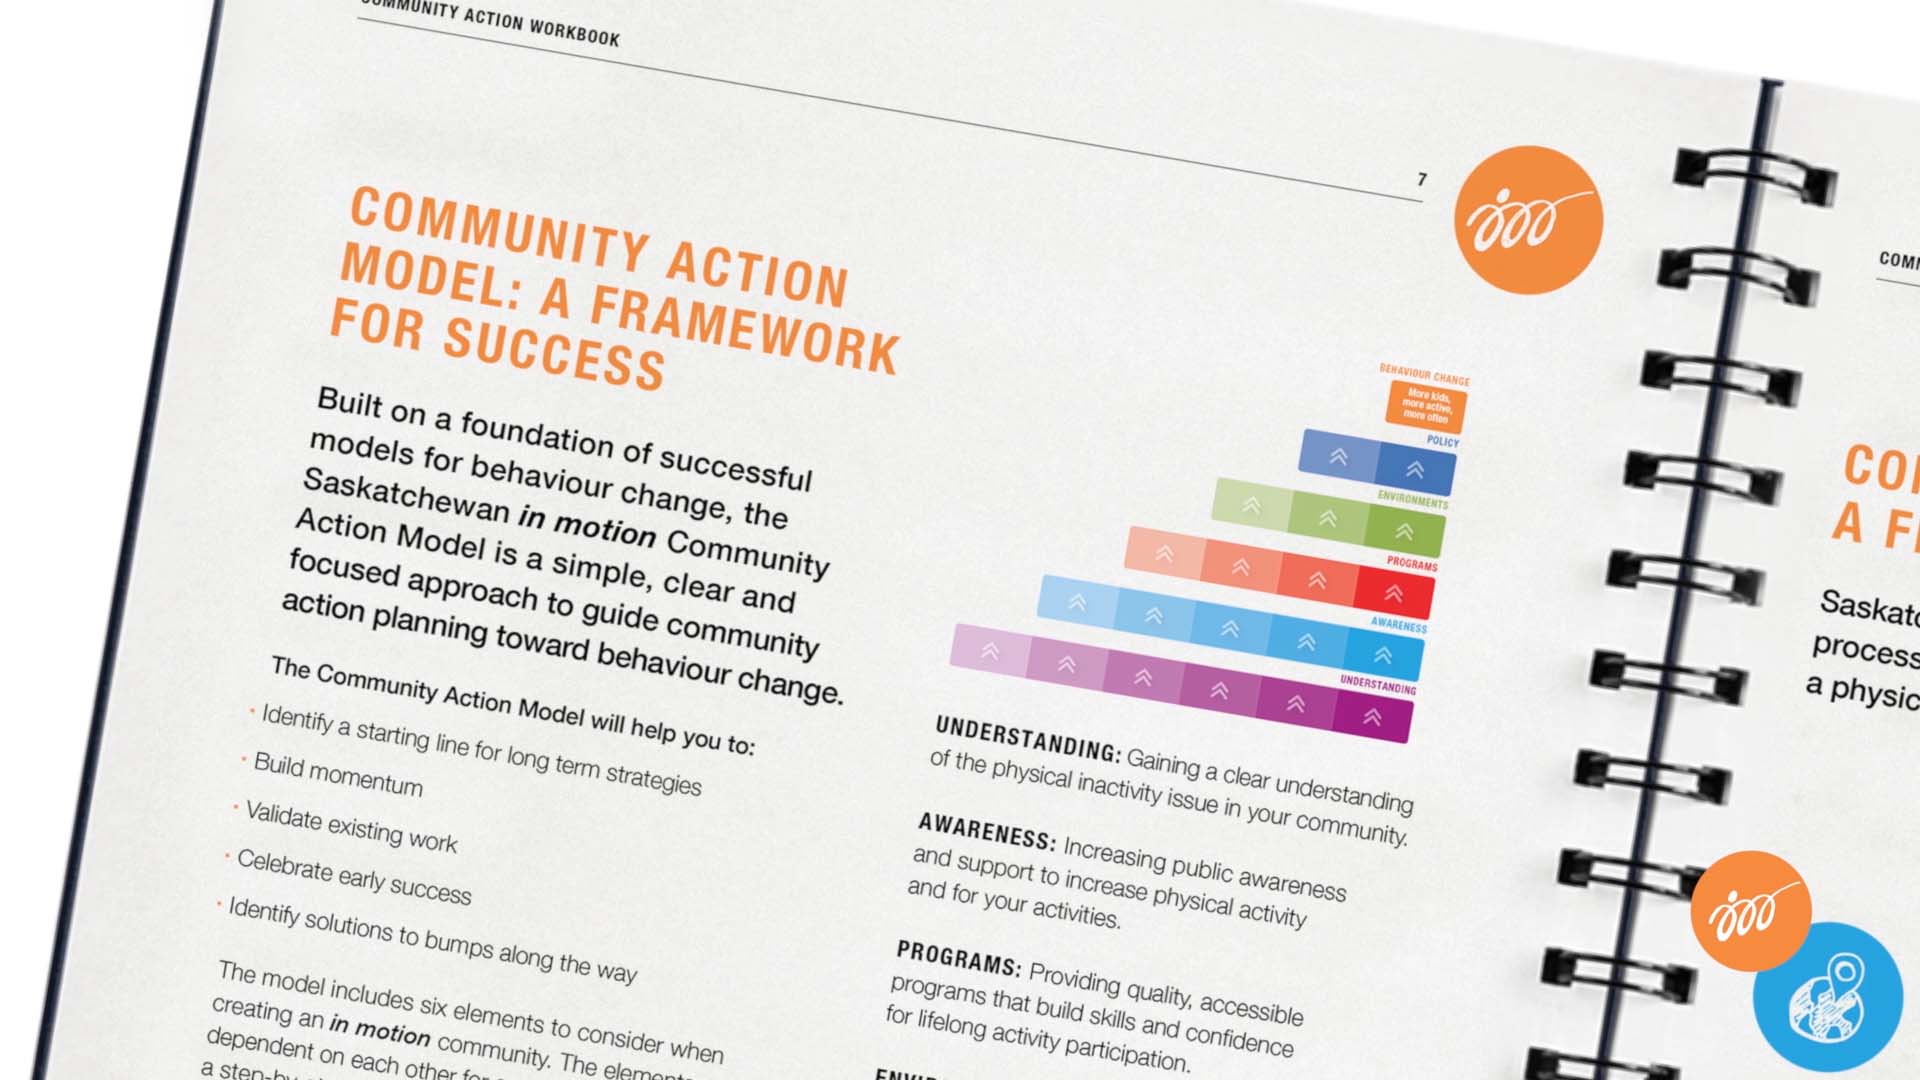 Saskatchewan in motion, Video, Community Action Workbook, Portfolio Image, 